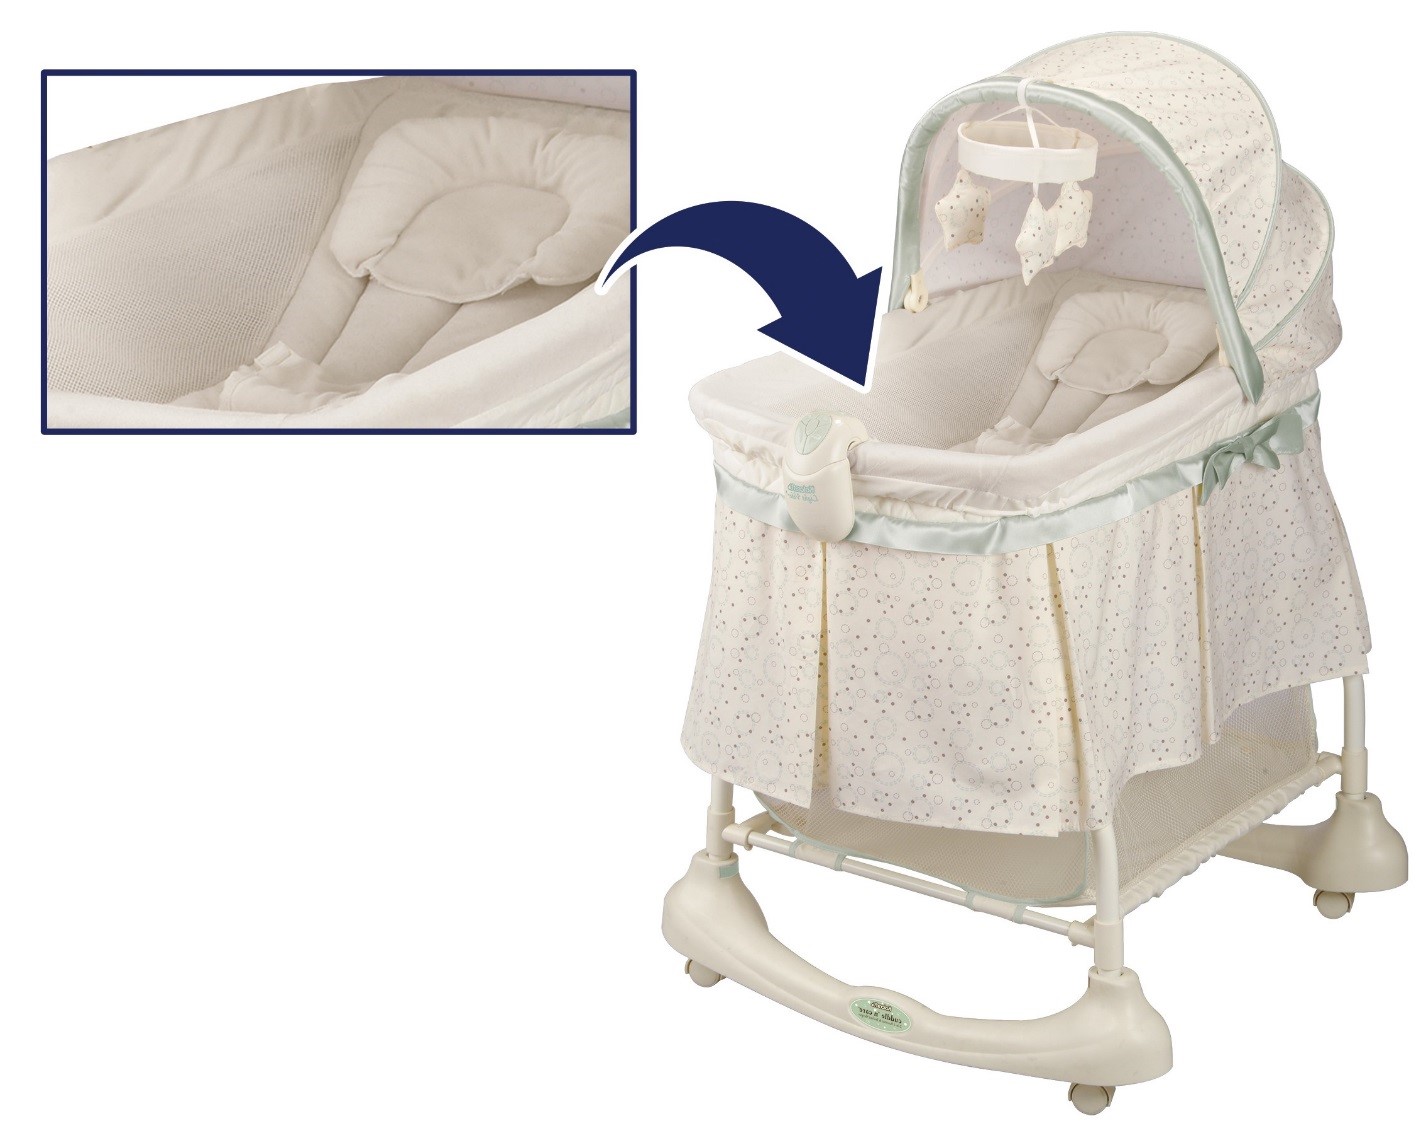  Inglesina Electa - Moisés + soporte para bebés y recién nacidos  de hasta 6 meses, para dormir durante la noche y viajes, con sistema de  control de ventilación, cubierta y dosel